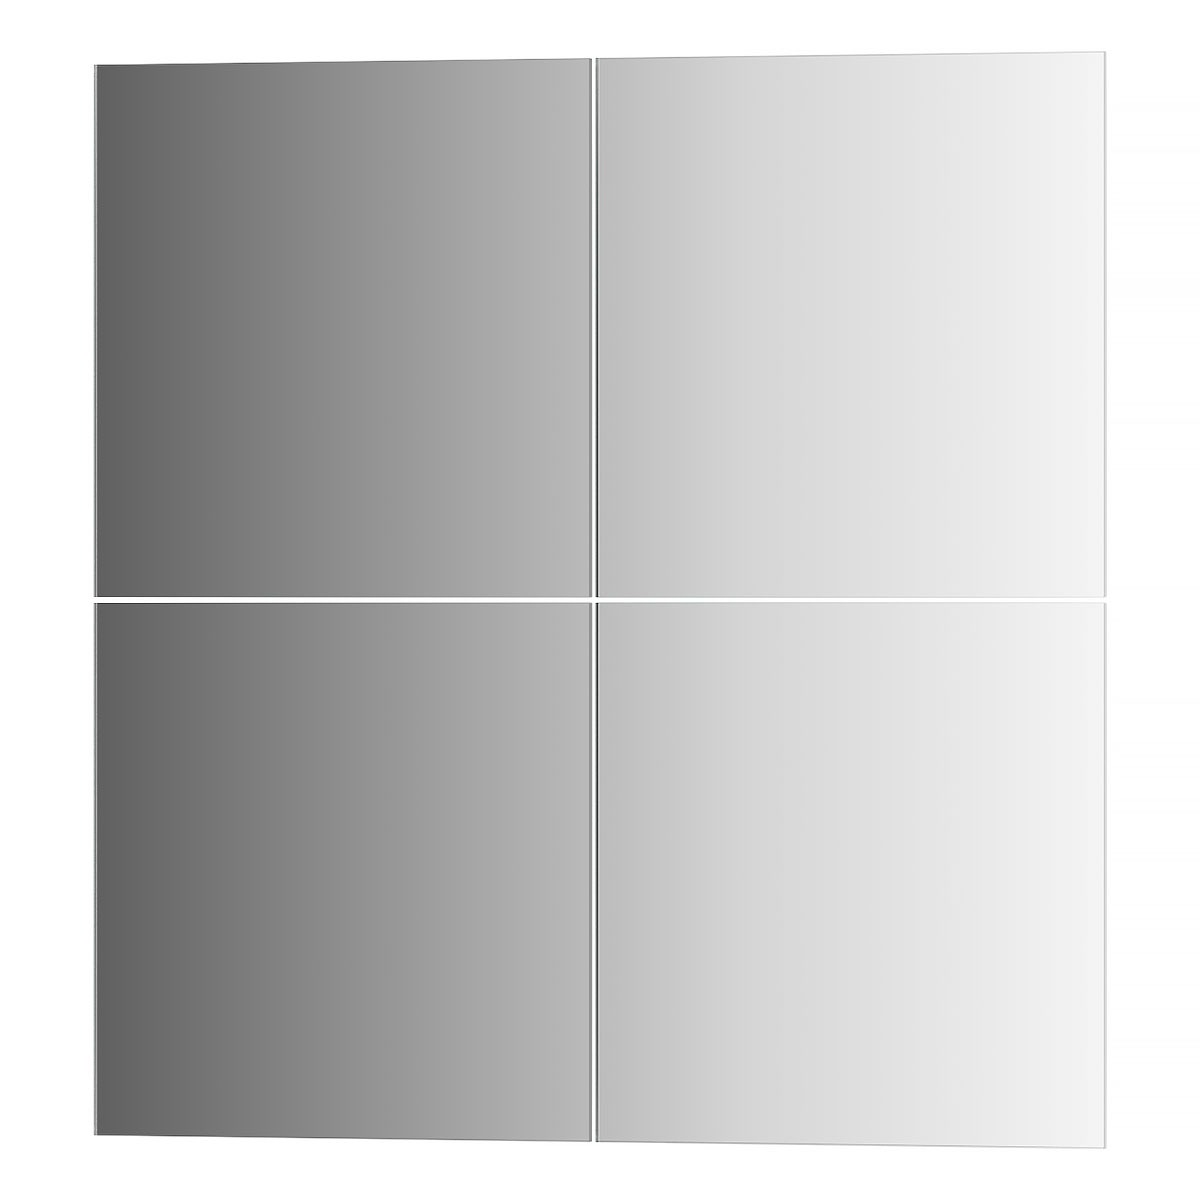 фото Зеркальная плитка evoform со шлифованной кромкой - комплект 4 шт квадрат 20х20 см; серебро